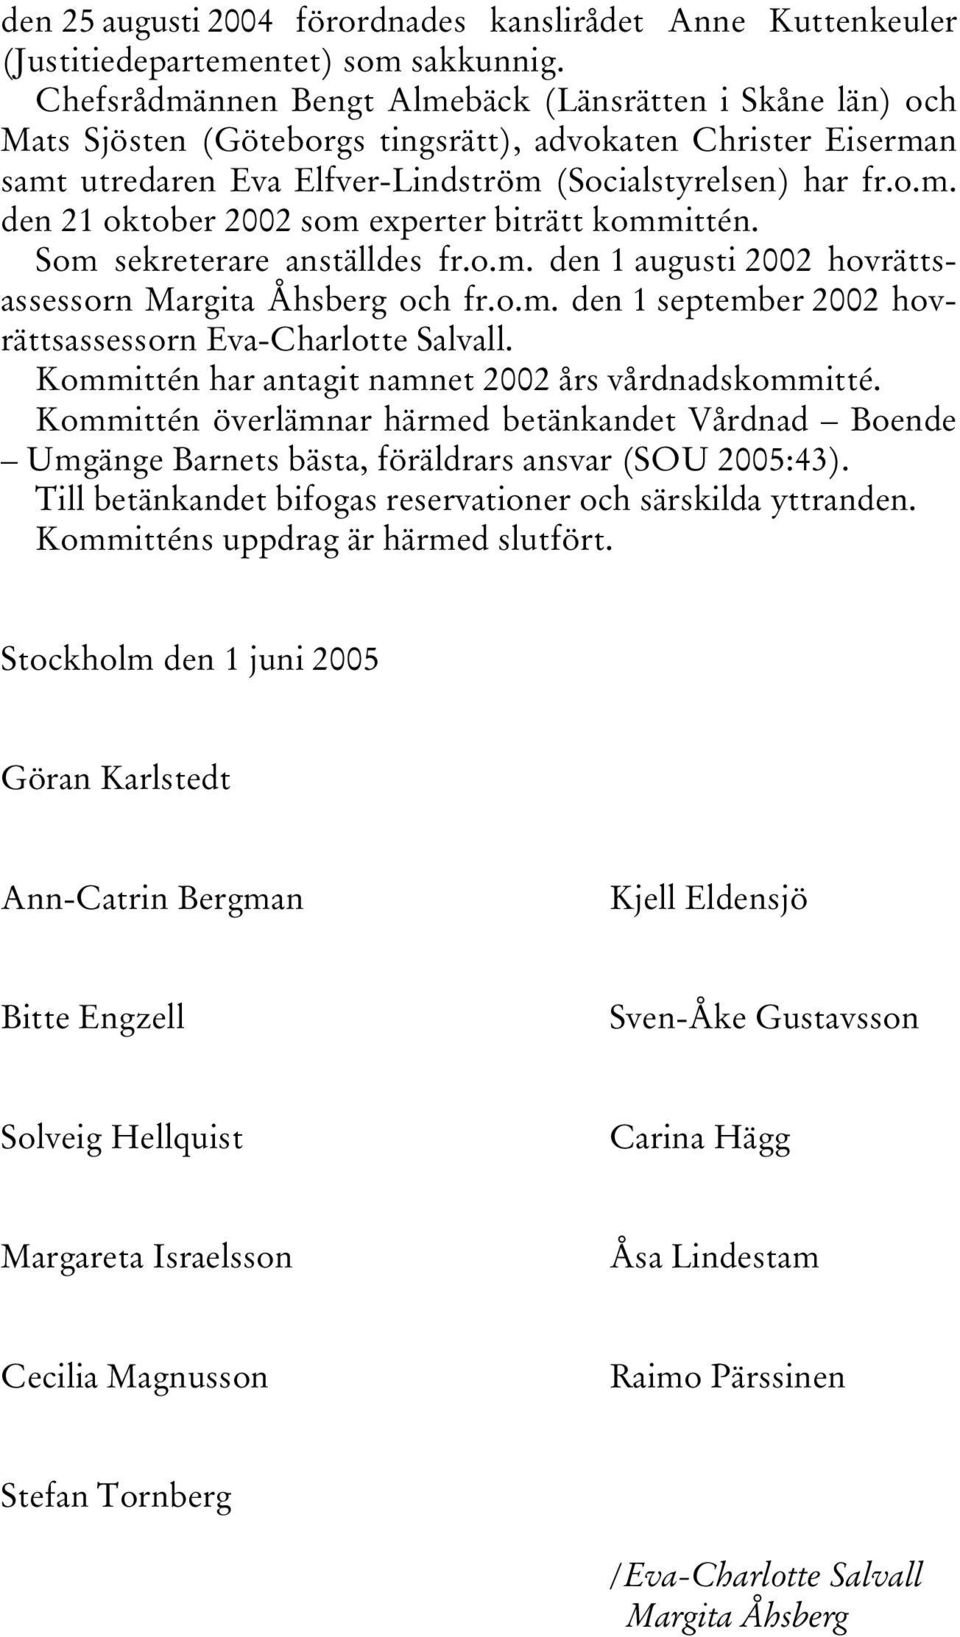 Som sekreterare anställdes fr.o.m. den 1 augusti 2002 hovrättsassessorn Margita Åhsberg och fr.o.m. den 1 september 2002 hovrättsassessorn Eva-Charlotte Salvall.